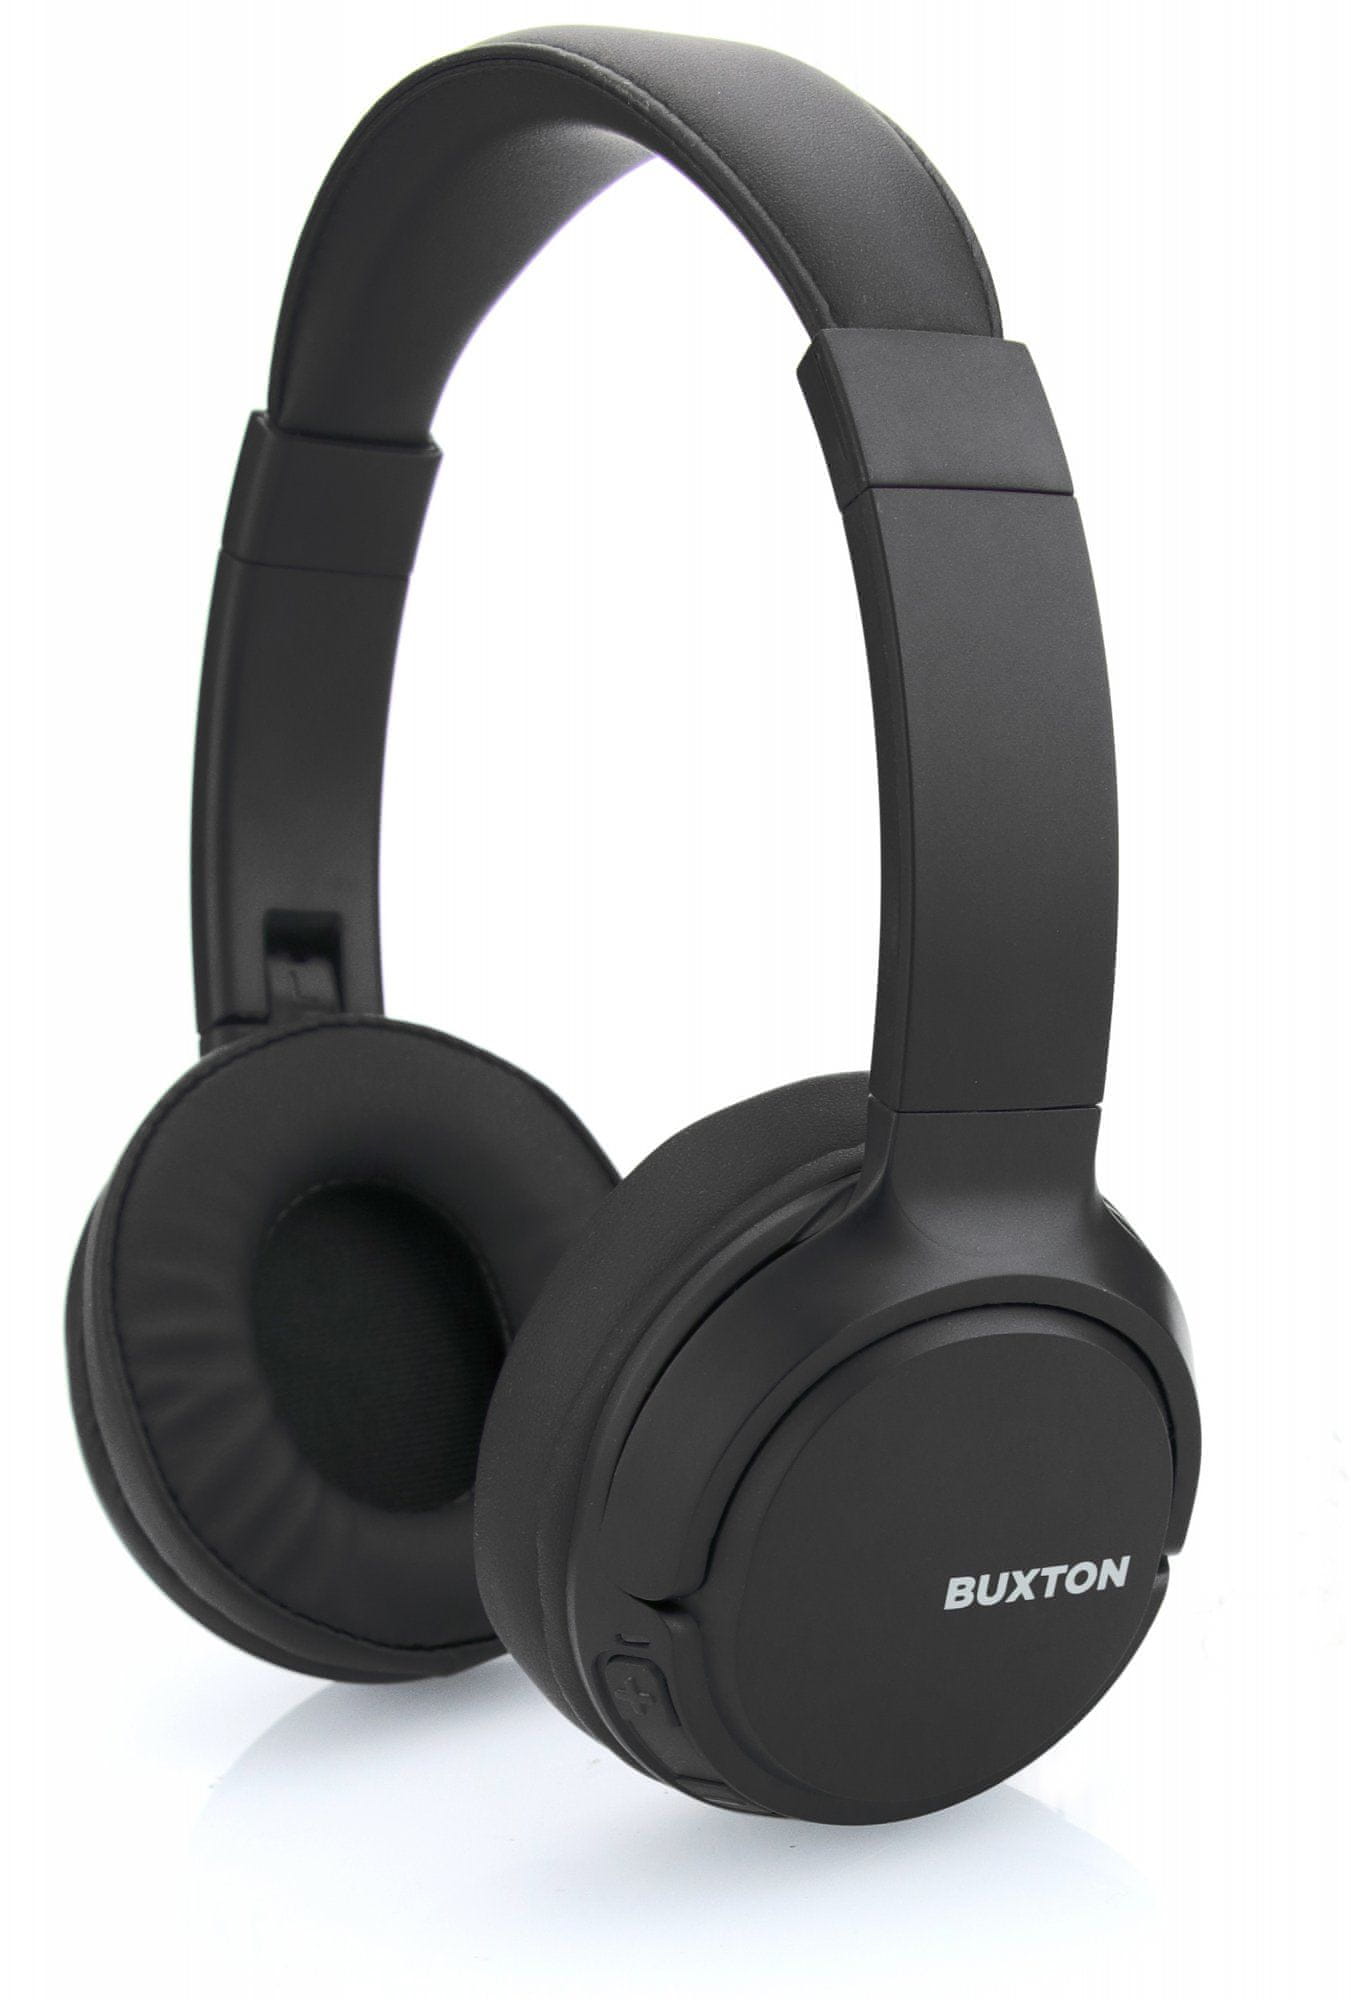  buxton bhp 7300 modern vezeték nélküli bluetooth technológia kényelmes, könnyű fejhallgató állapotjelző led usb töltés hosszú üzemidő 